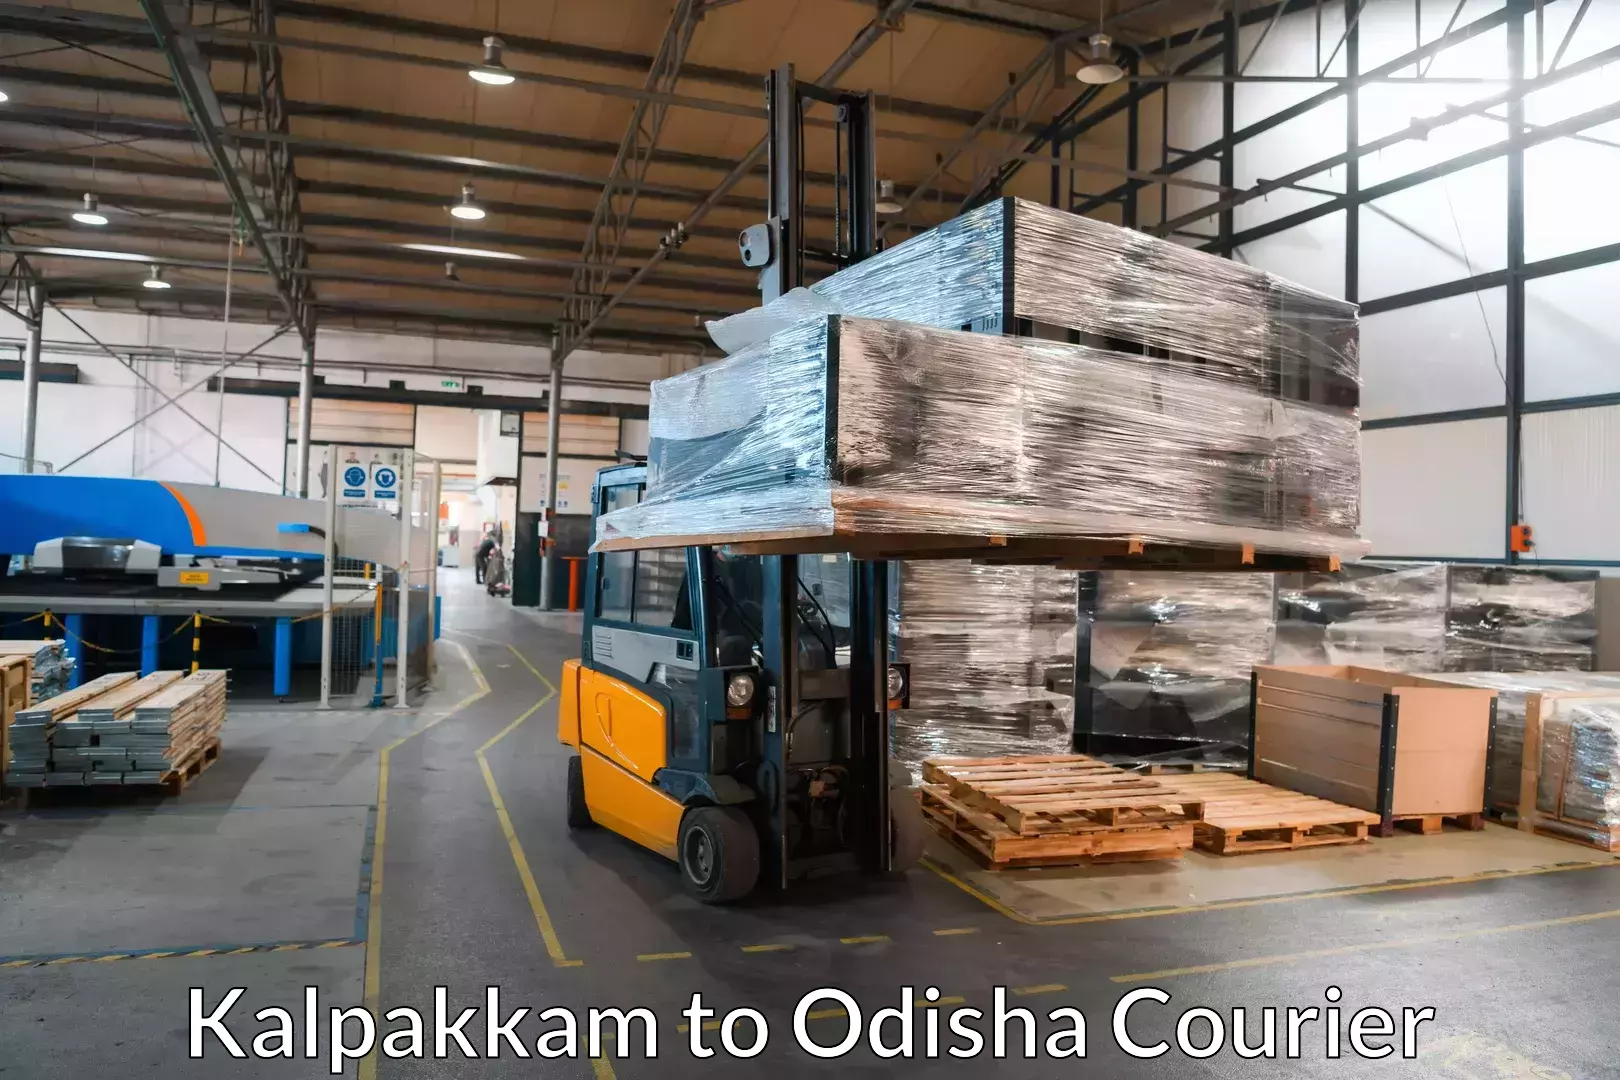 Professional movers and packers Kalpakkam to Bhawanipatna